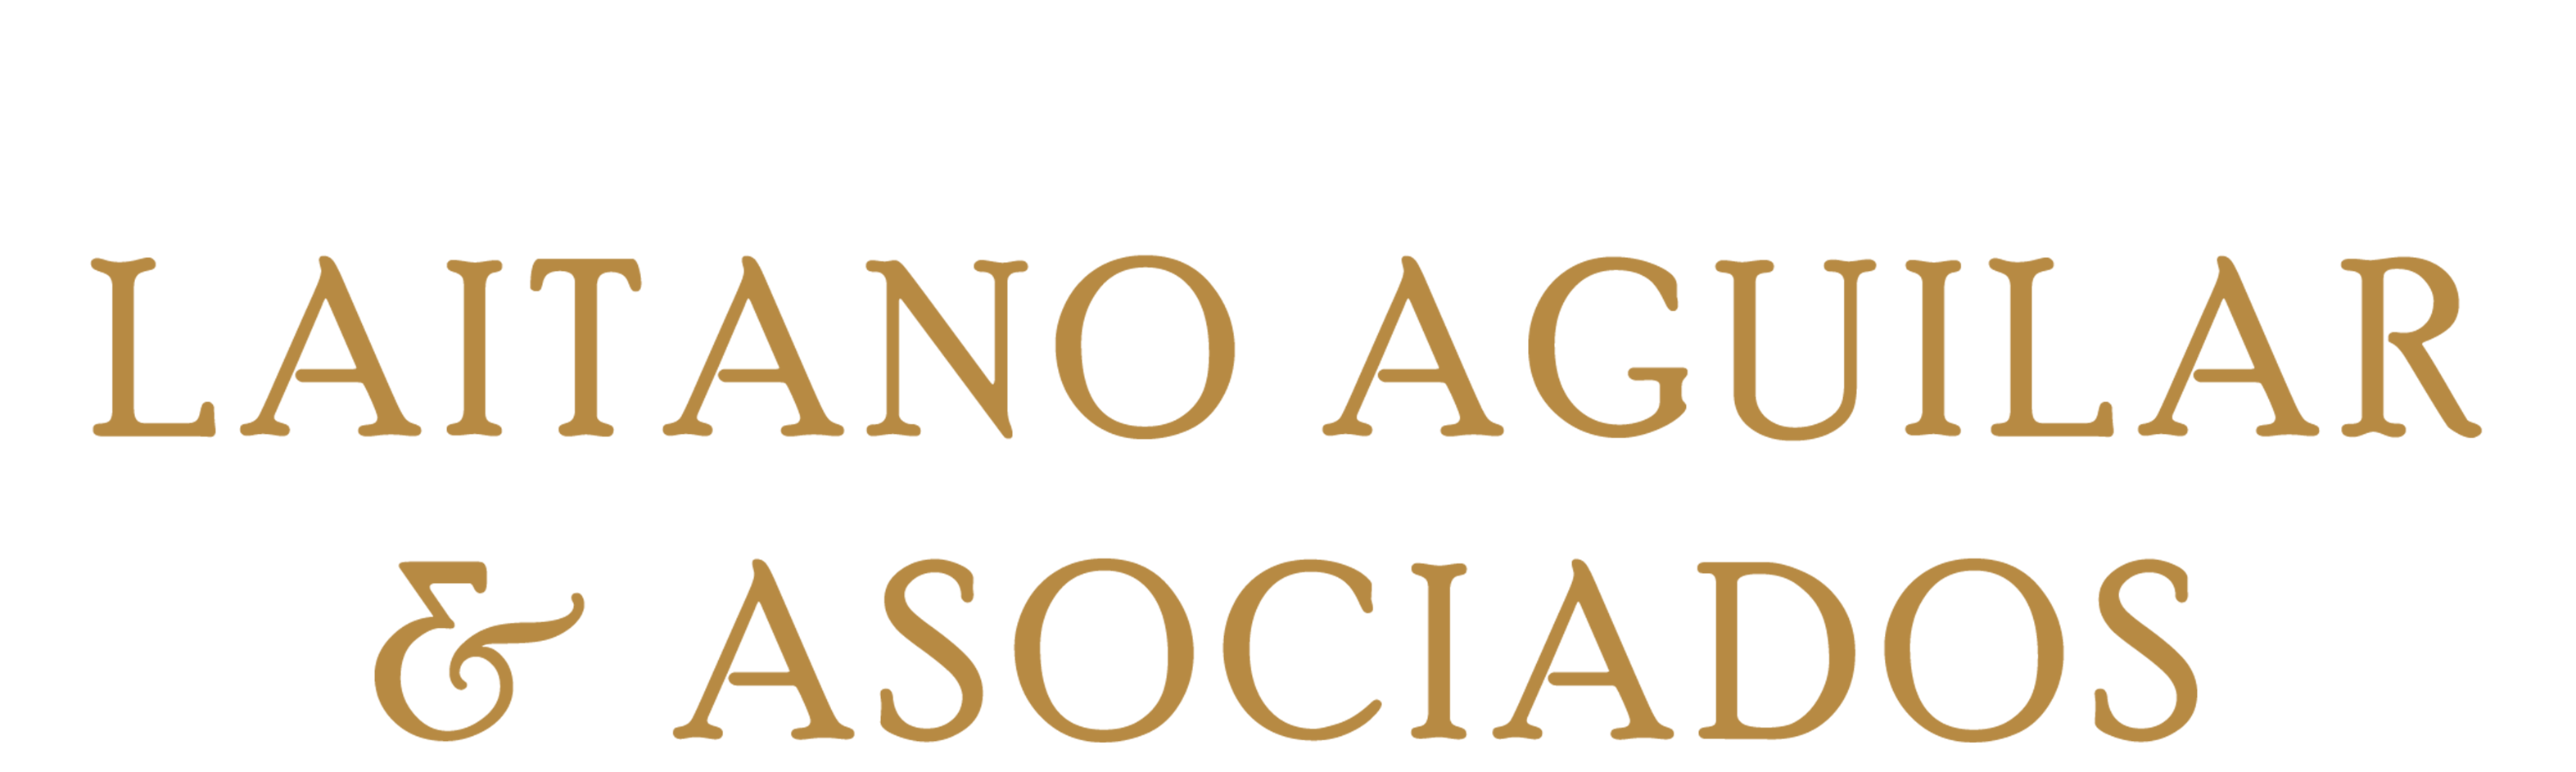 Firma Legal Laitano Aguilar & Asociados